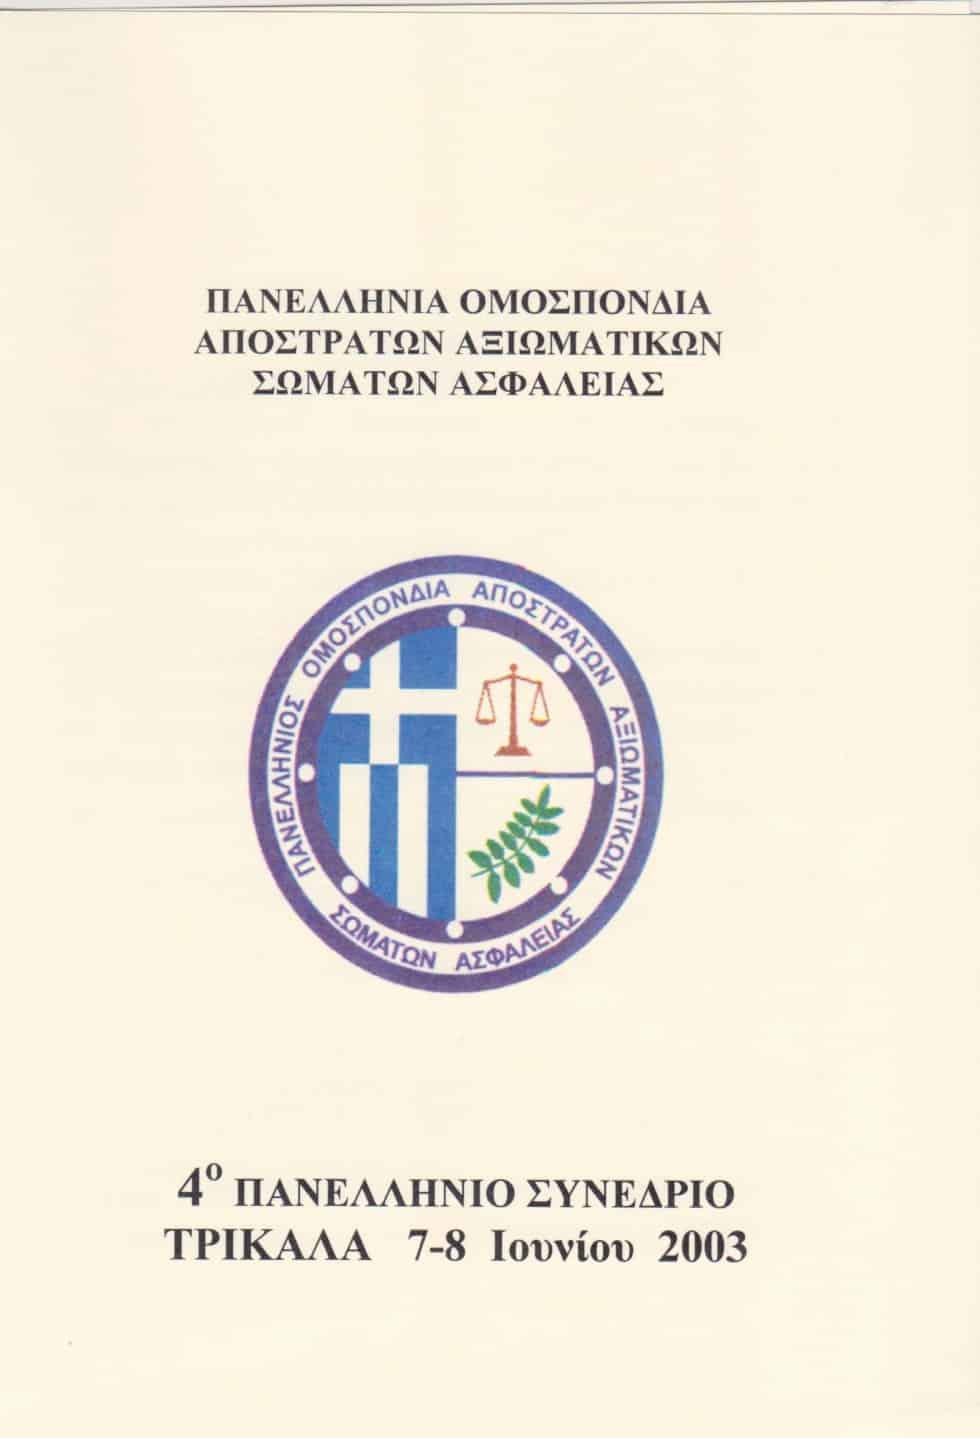 4ο Πανελλήνιο Συνέδριο Π.Ο.Α.Α.Σ.Α. Τρίκαλα 7-8 Ιουνίου 2003